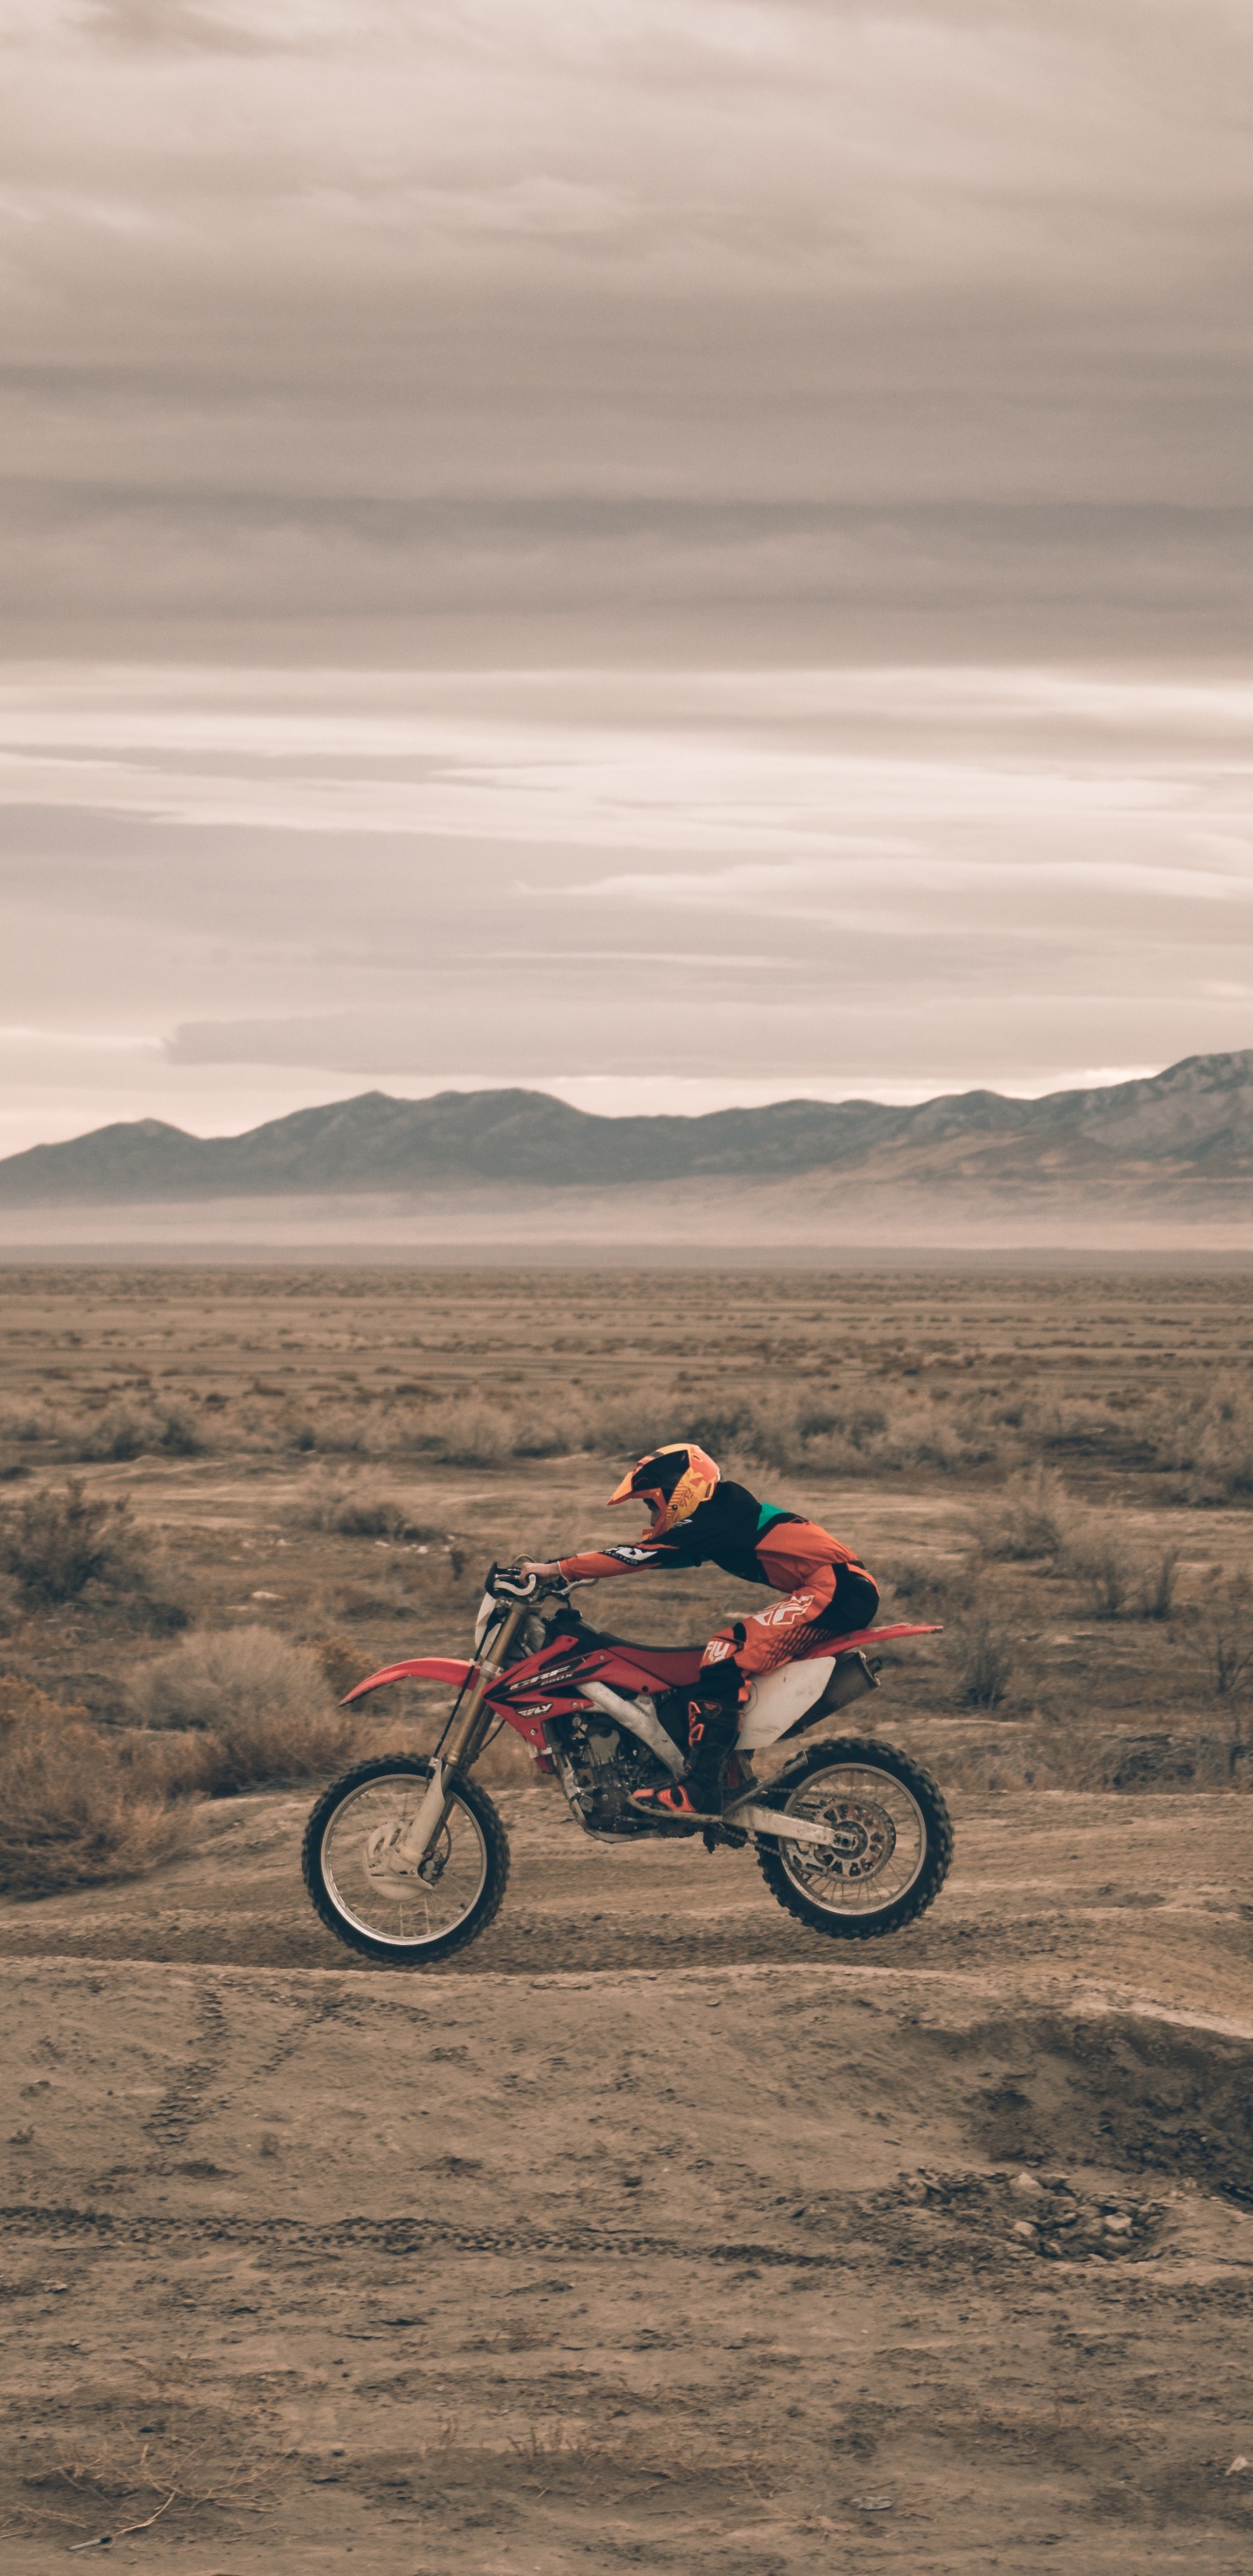 Hombre de Chaqueta Roja en Motocicleta Roja en Campo Marrón Durante el Día. Wallpaper in 1440x2960 Resolution